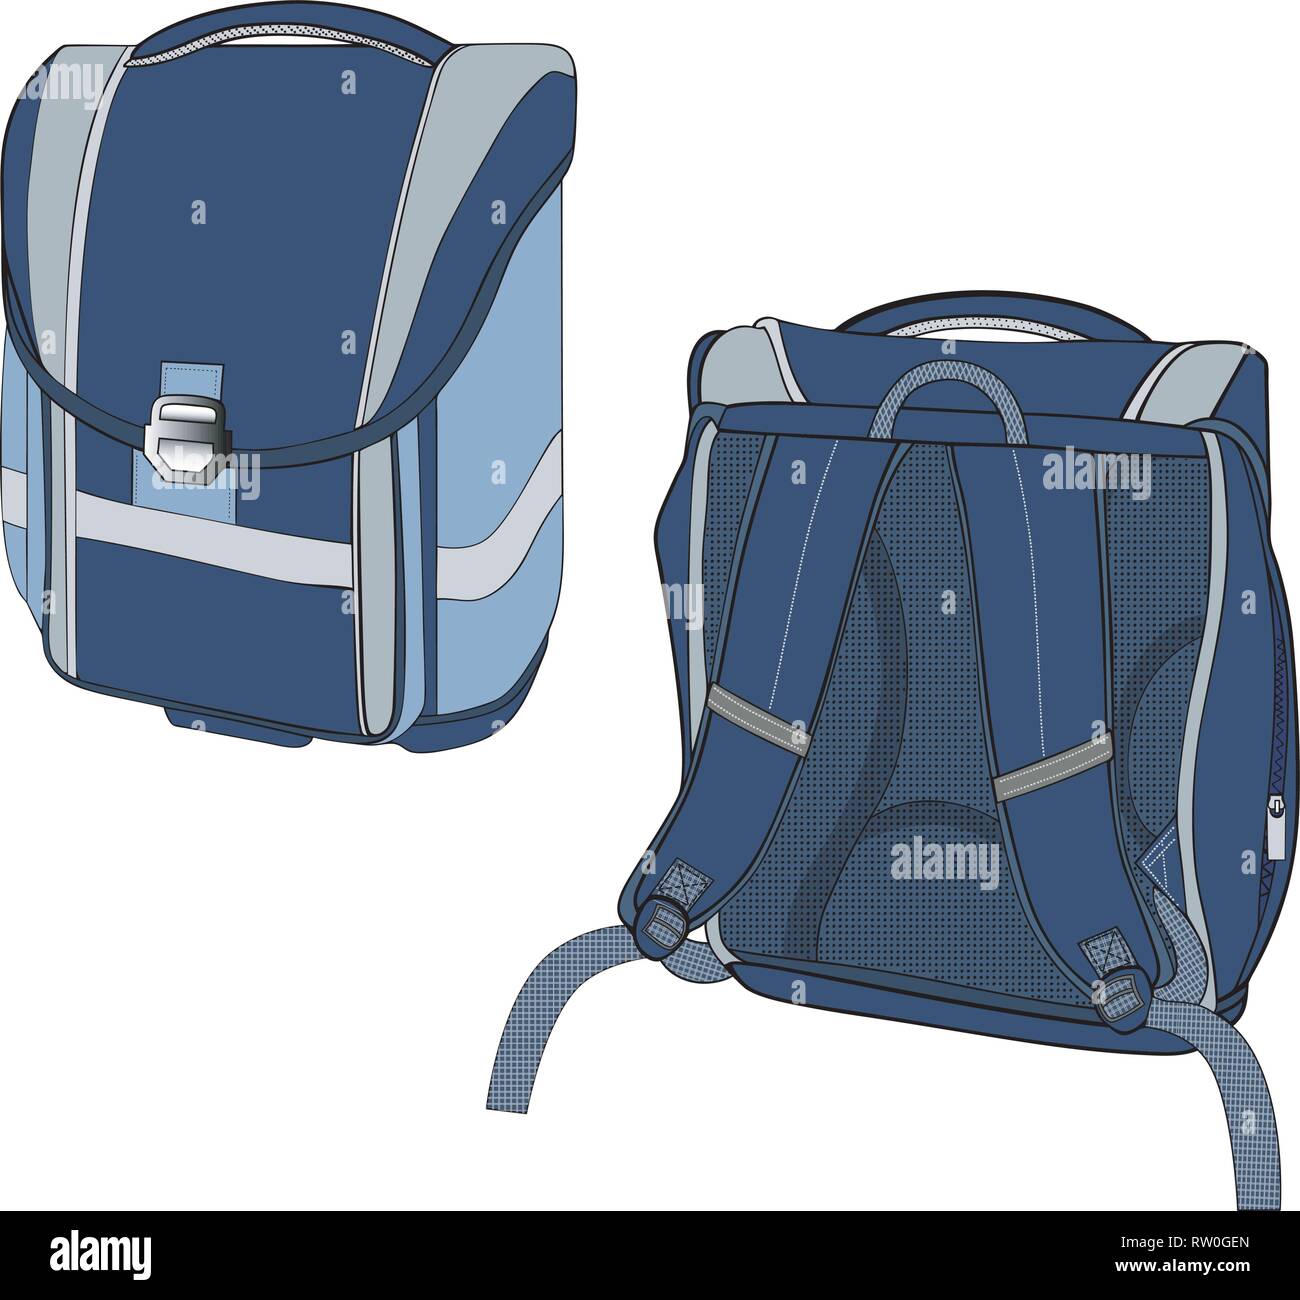 L'illustration montre une école modèle sac à dos bleu foncé dans différentes positions. Illustration de Vecteur